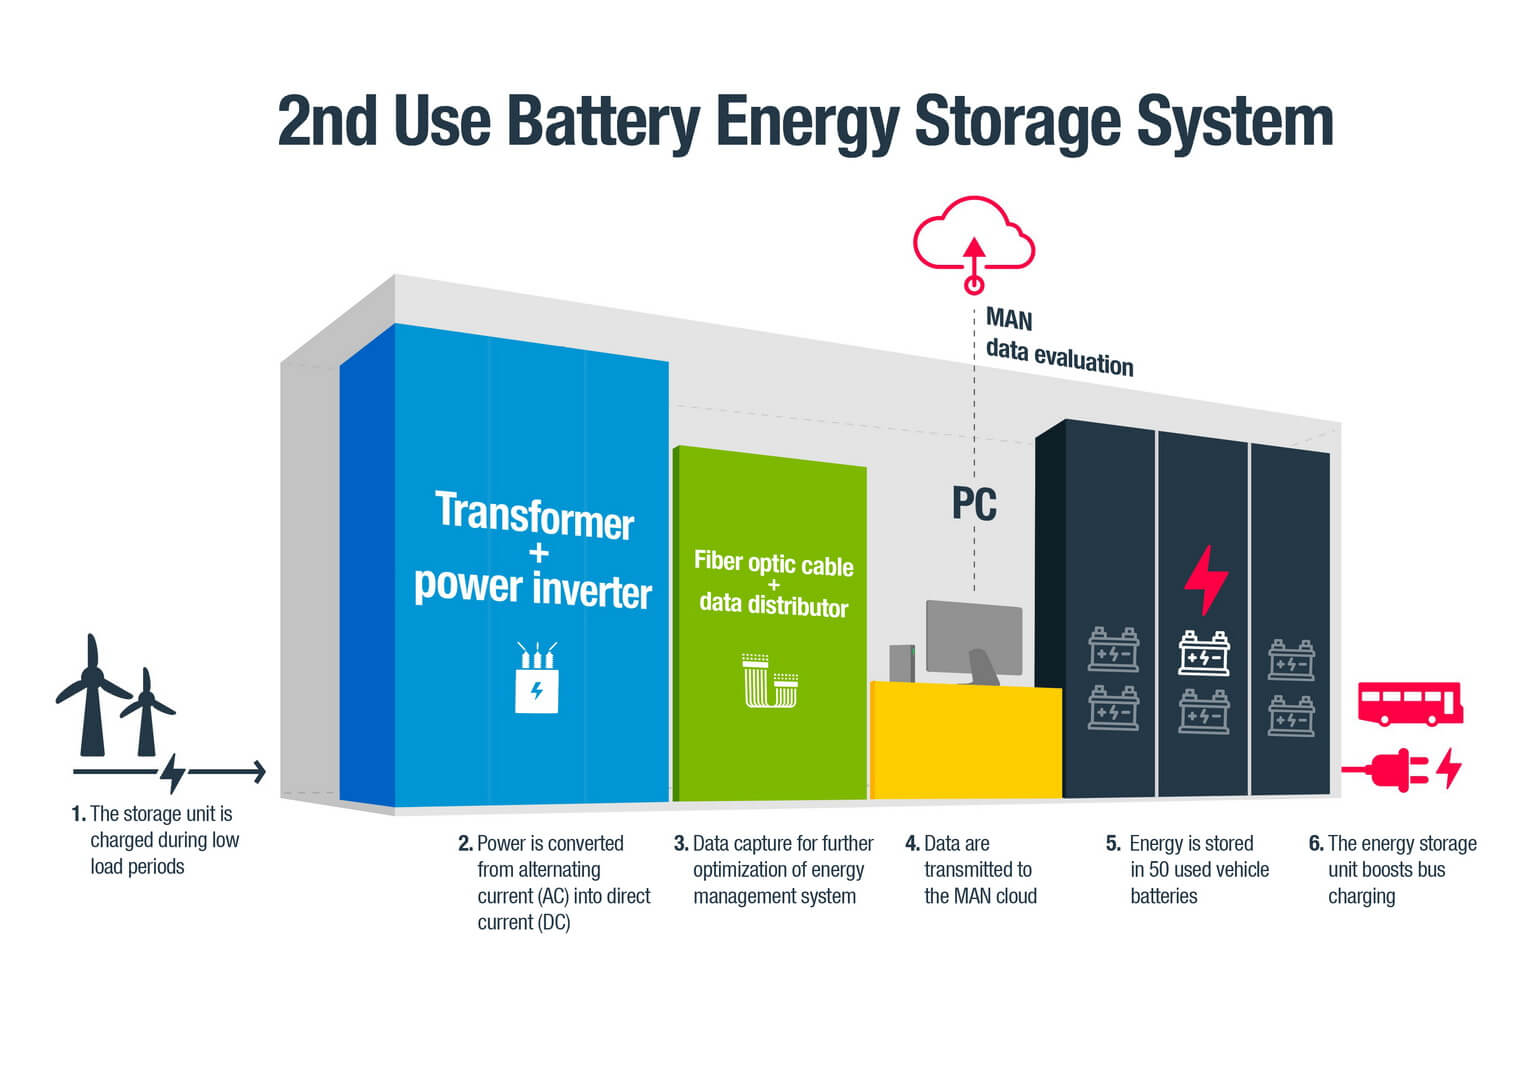 MAN создал систему хранения энергии из 50 отработанных батарей автомобилей